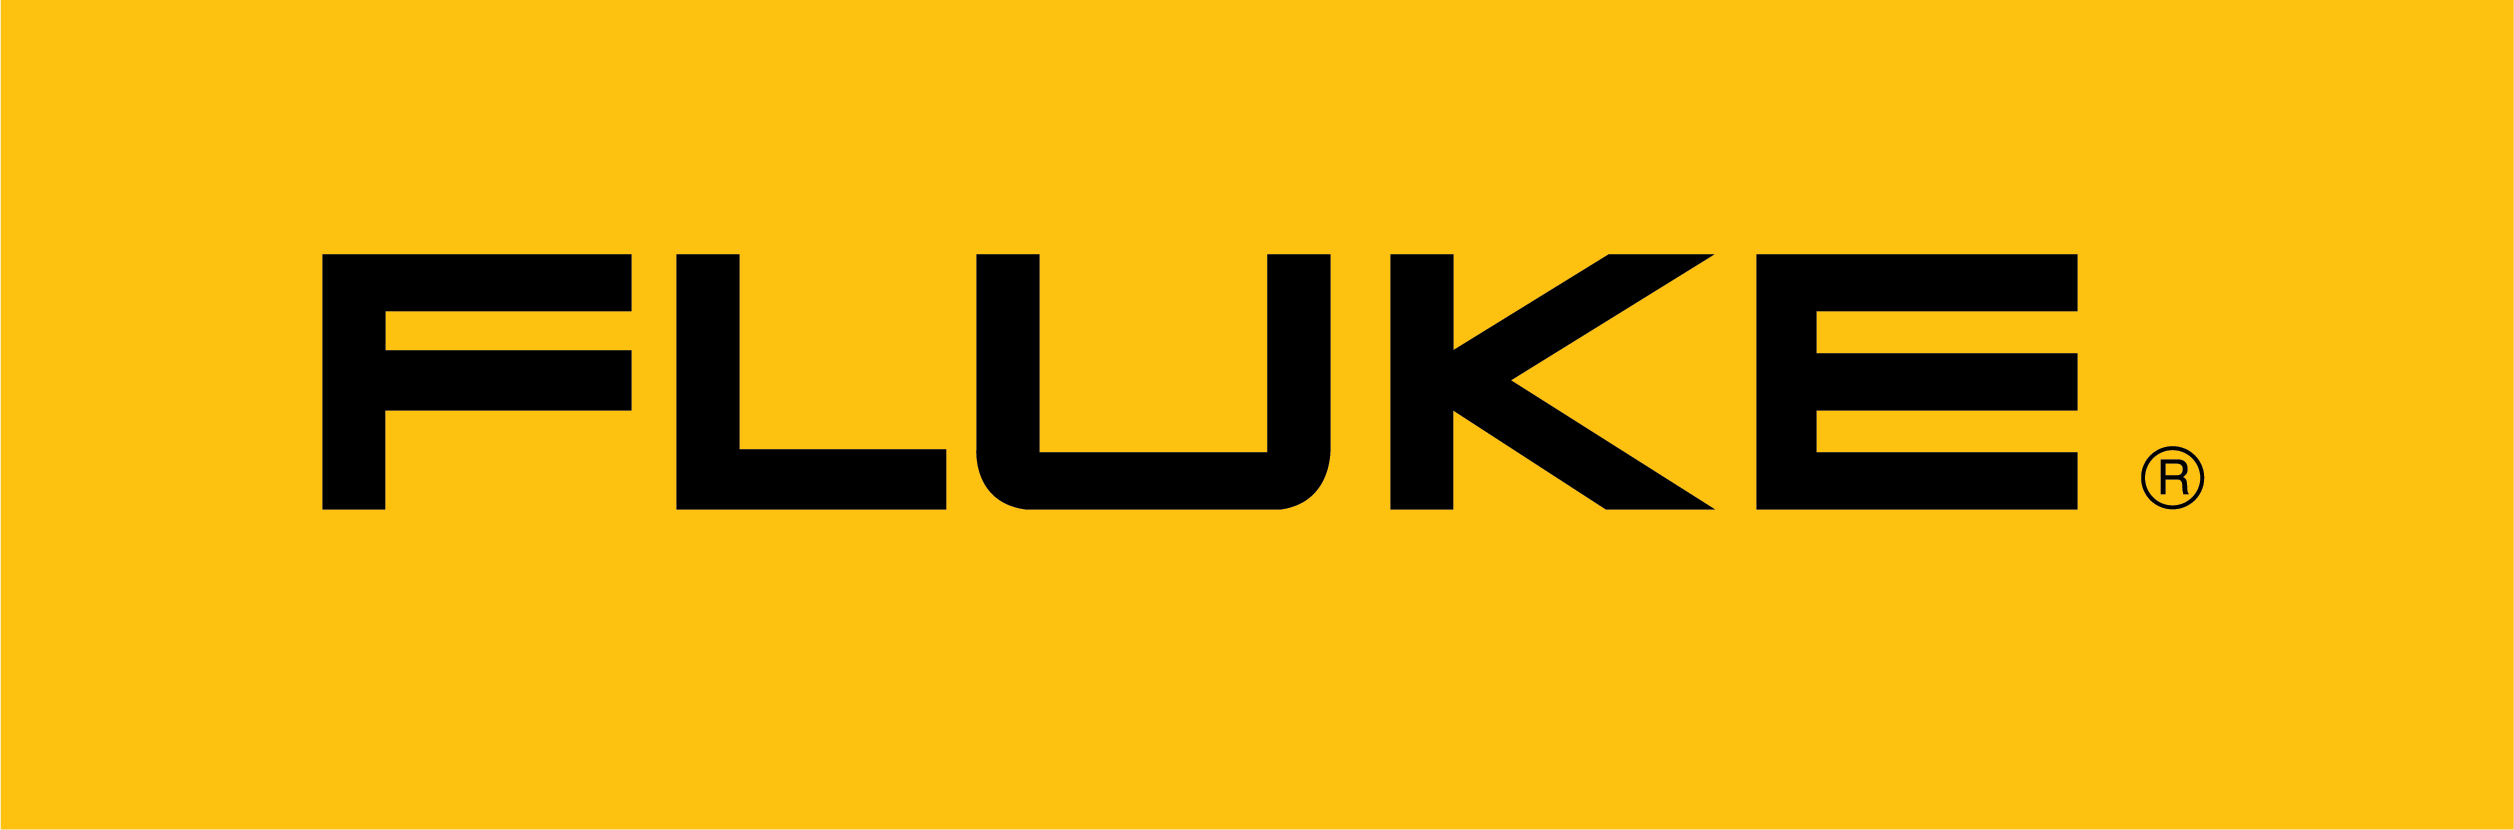 FLUKE-logo